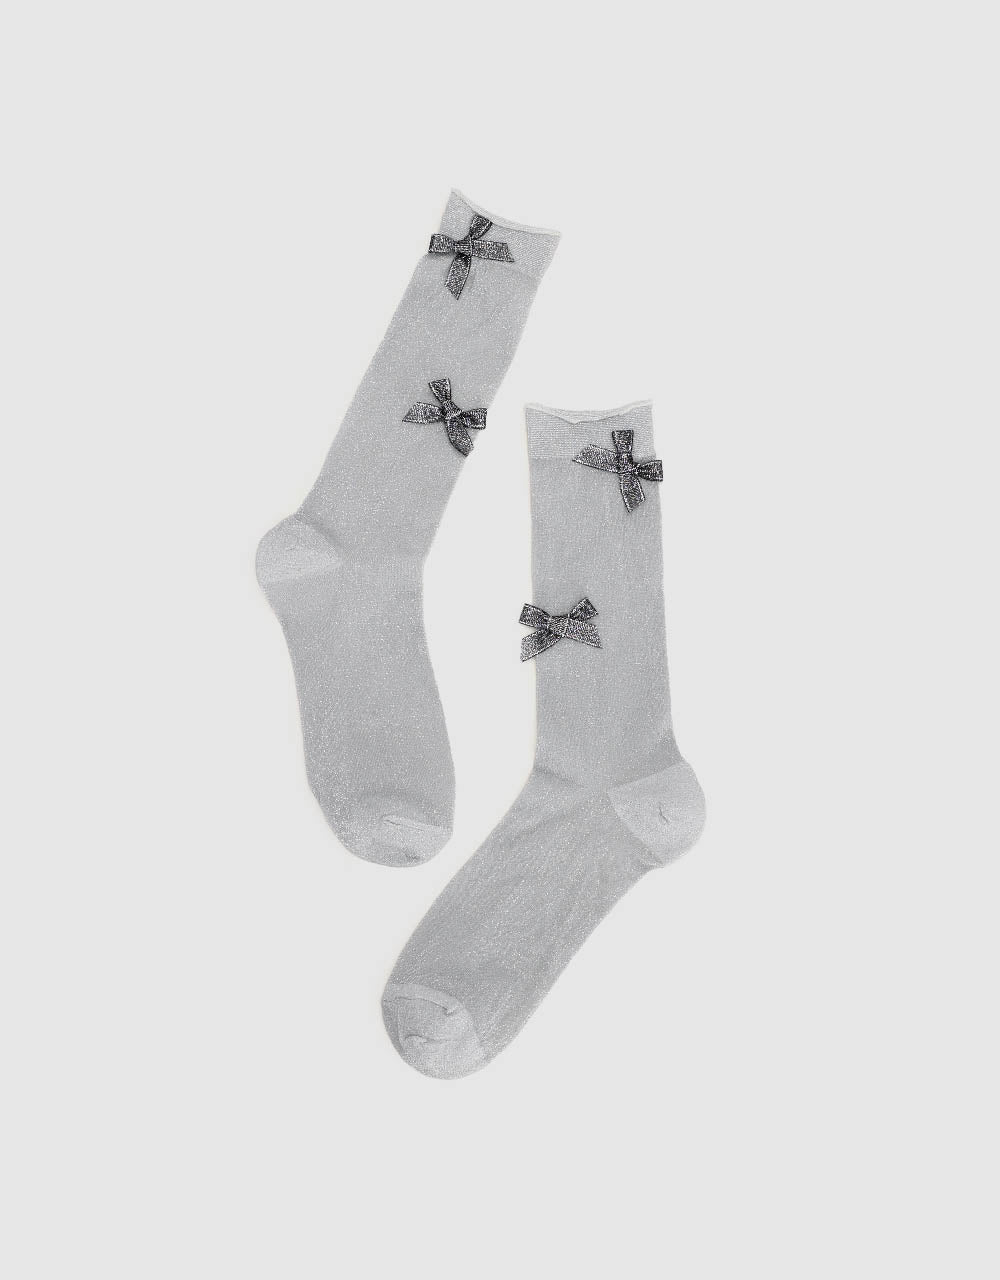 Bow Tie Décor Mid-Length Socks